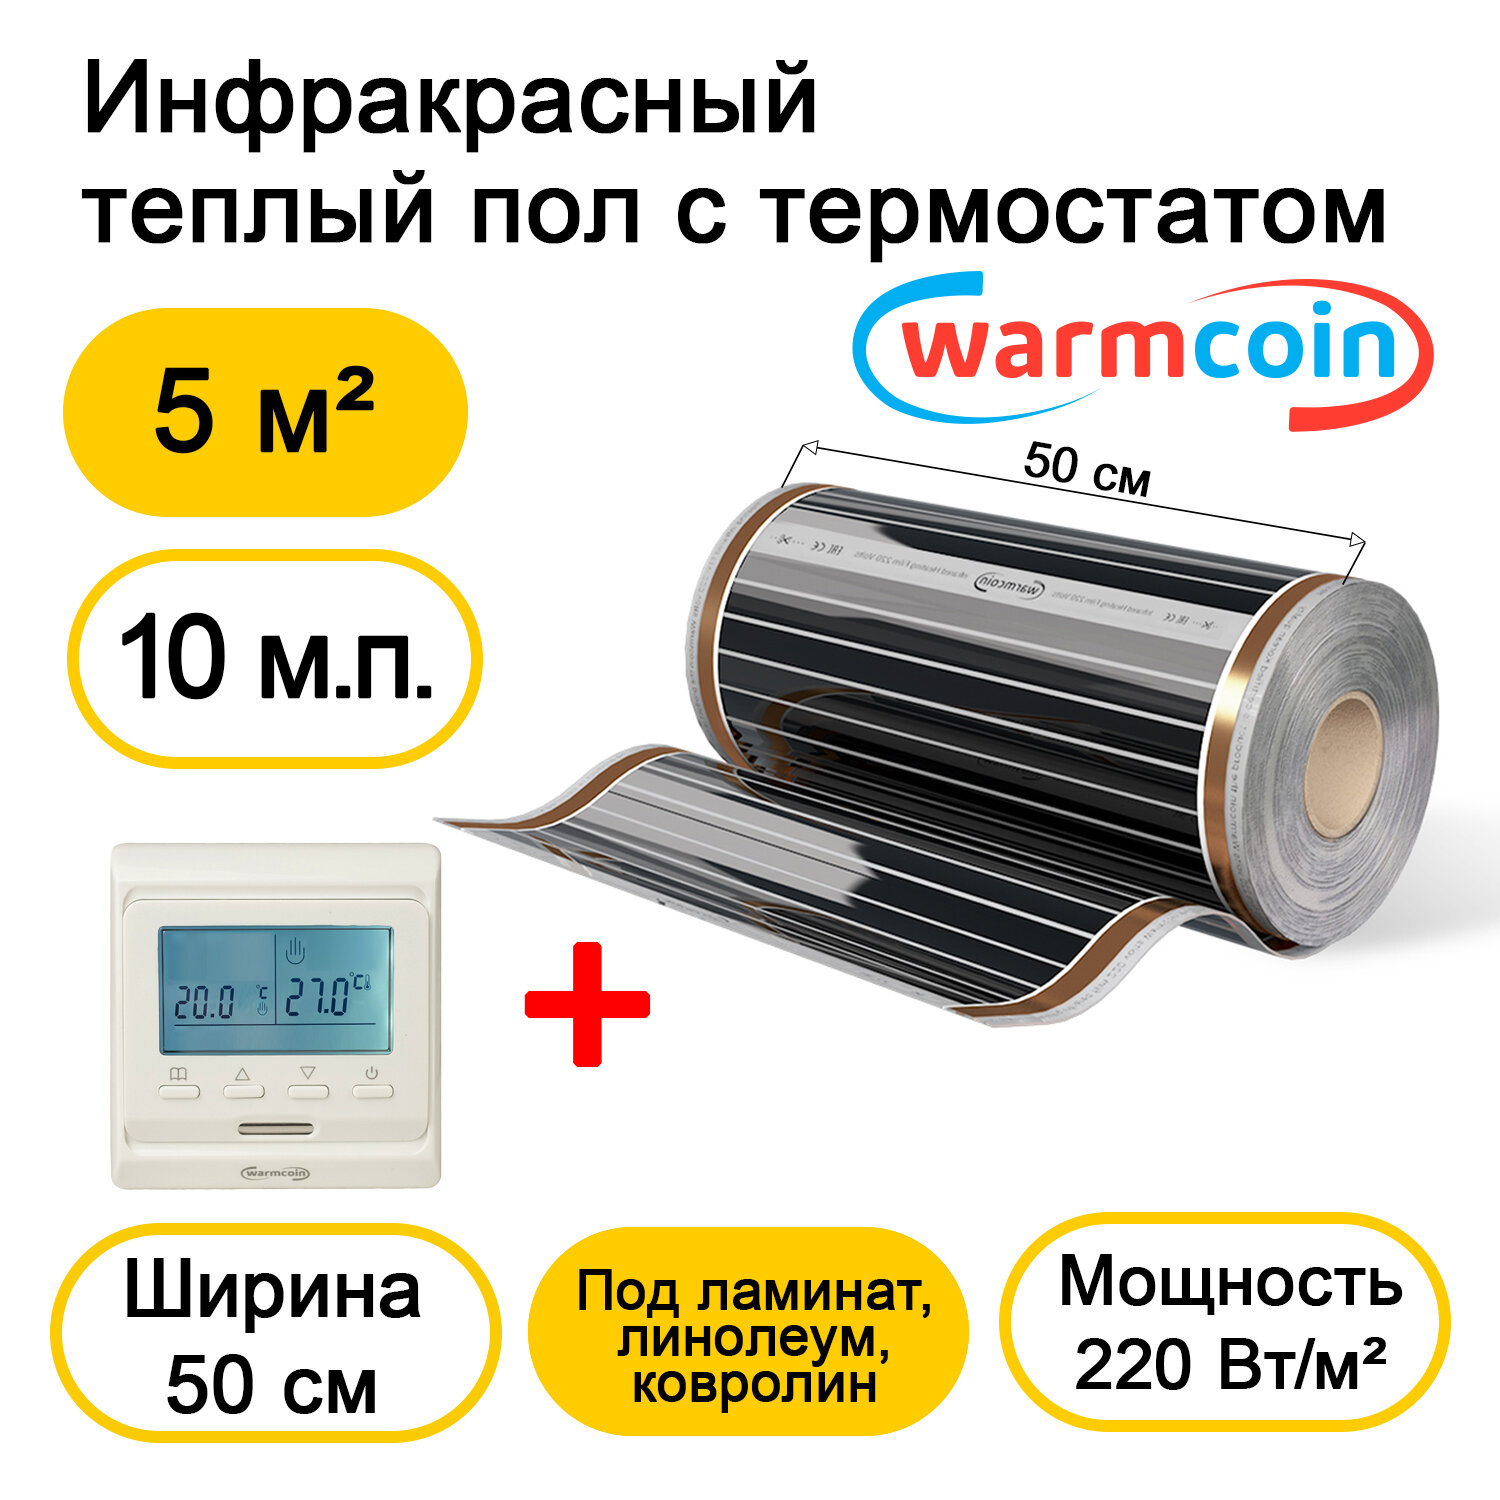 Теплый пол Warmcoin инфракрасный 50см, 220 Вт/м. кв. с электронным терморегулятором, 10 м. п